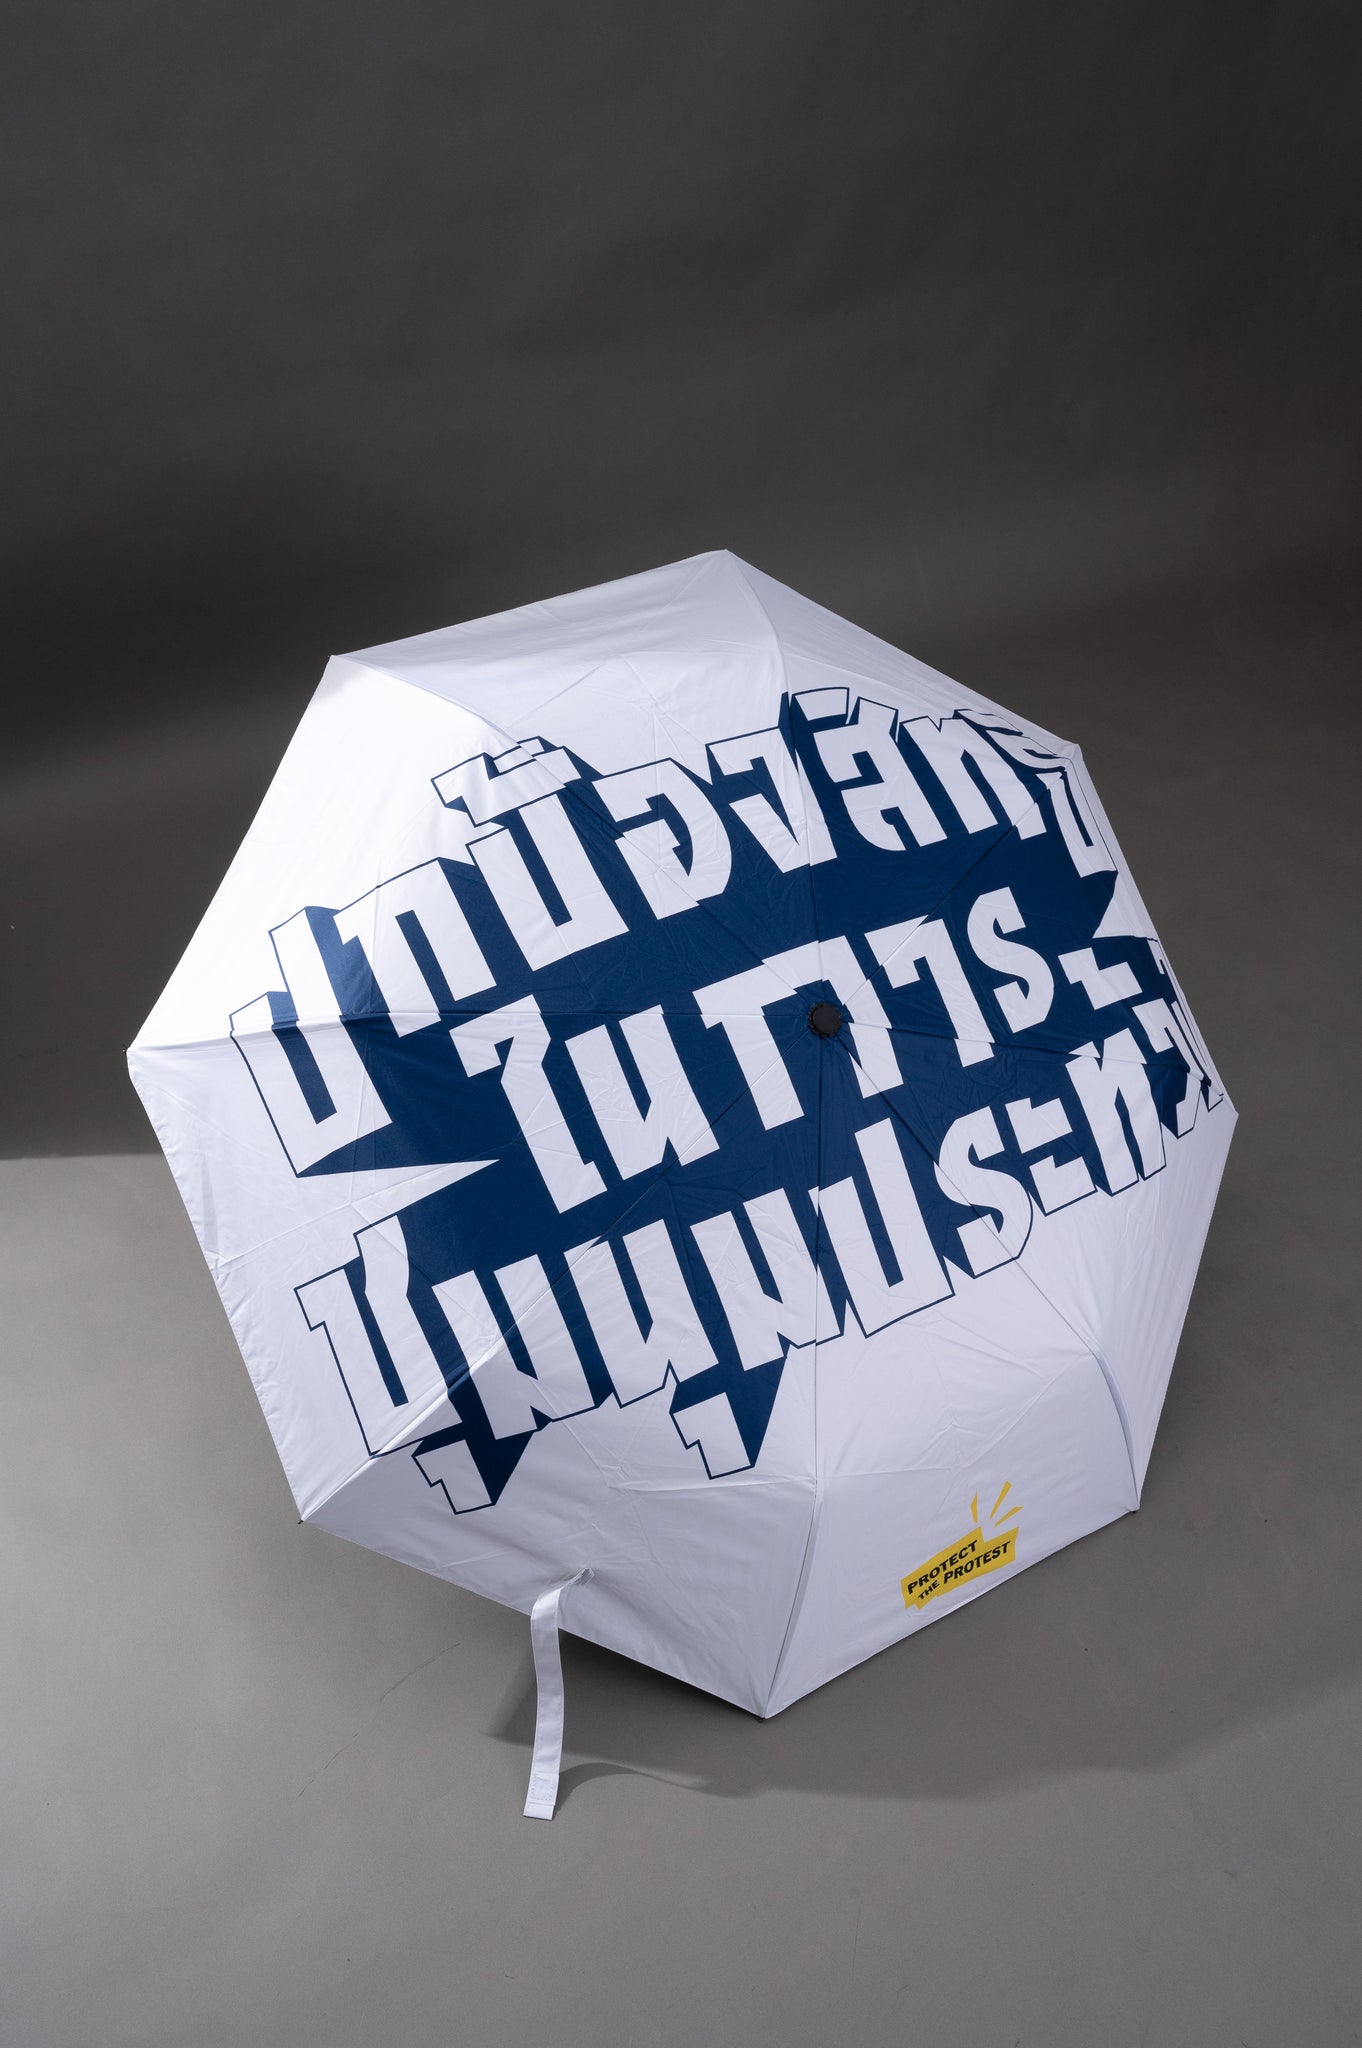 Protect The Protest Umbrella - ร่มสกรีนลาย ‘ปกป้องสิทธิในการชุมนุมประท้วง‘